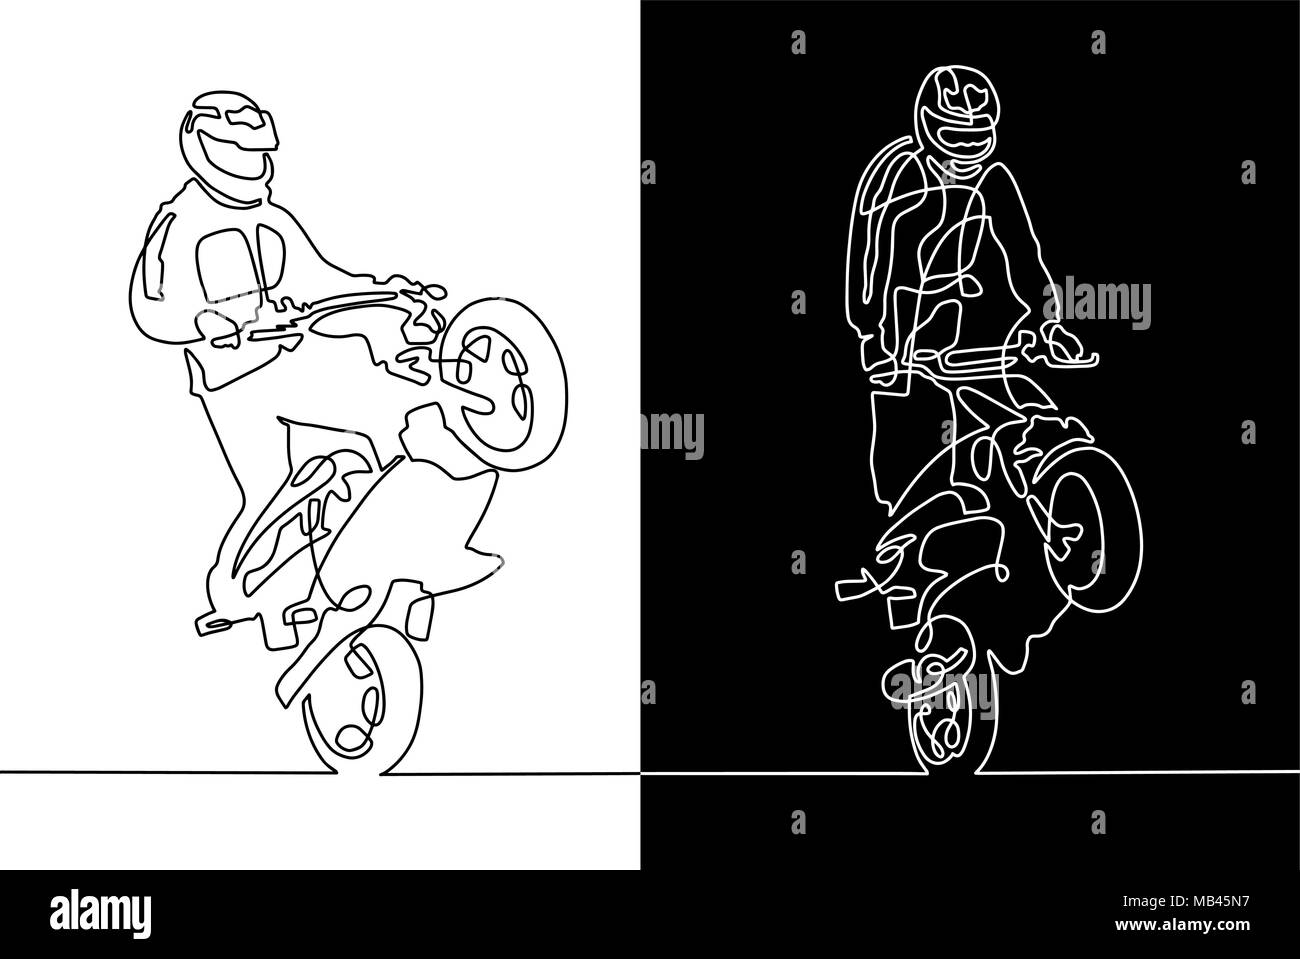 Une ligne continue d'un dessin sportif sur une moto Illustration de Vecteur